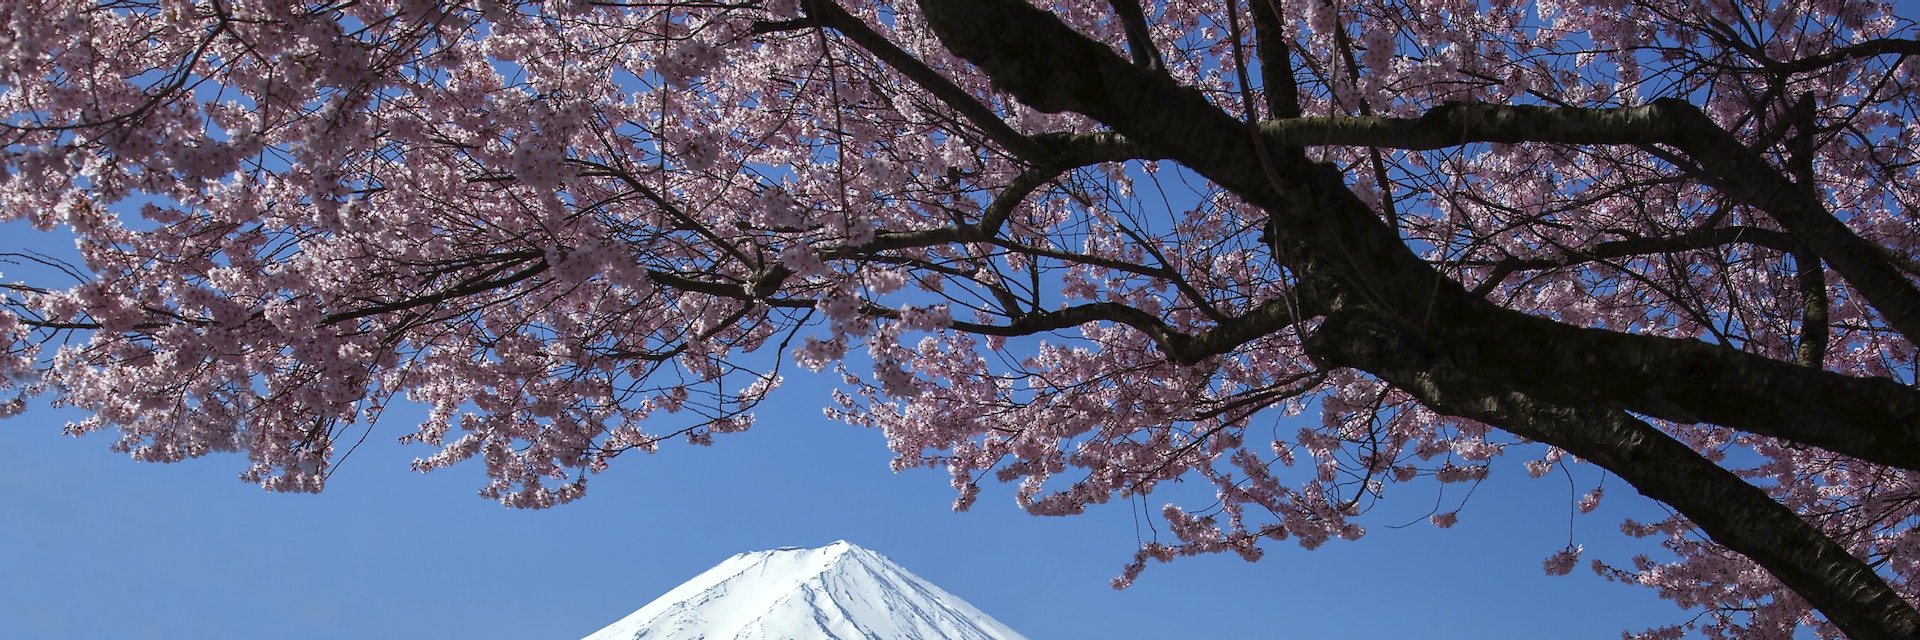 Mt Fuji and Cherry Blossom